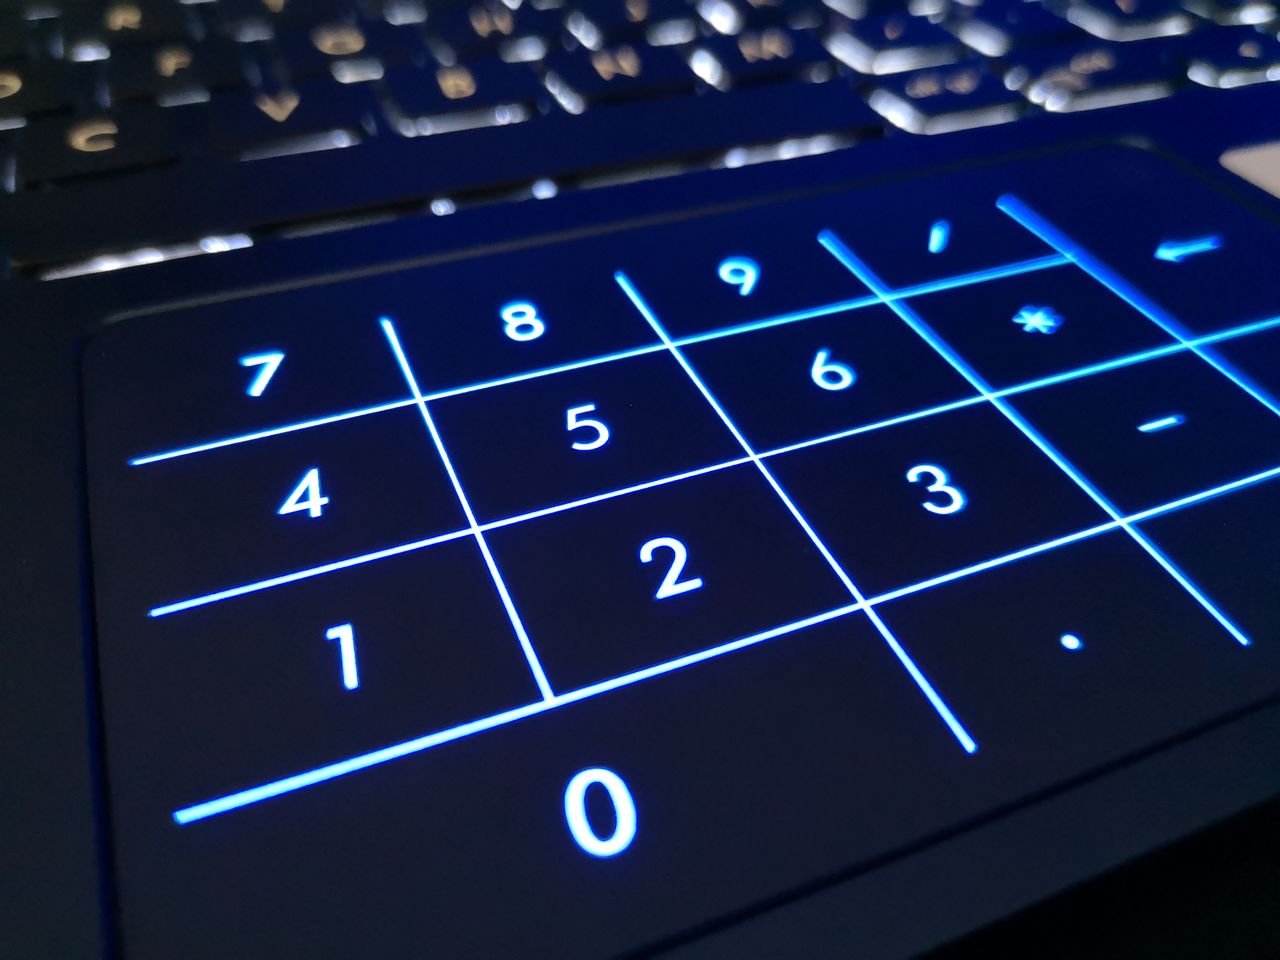 Wirtualna klawiatura wyświetlana jest na powierzchni gładzika po naciśnięciu przycisku w rogu płytki dotykowej.